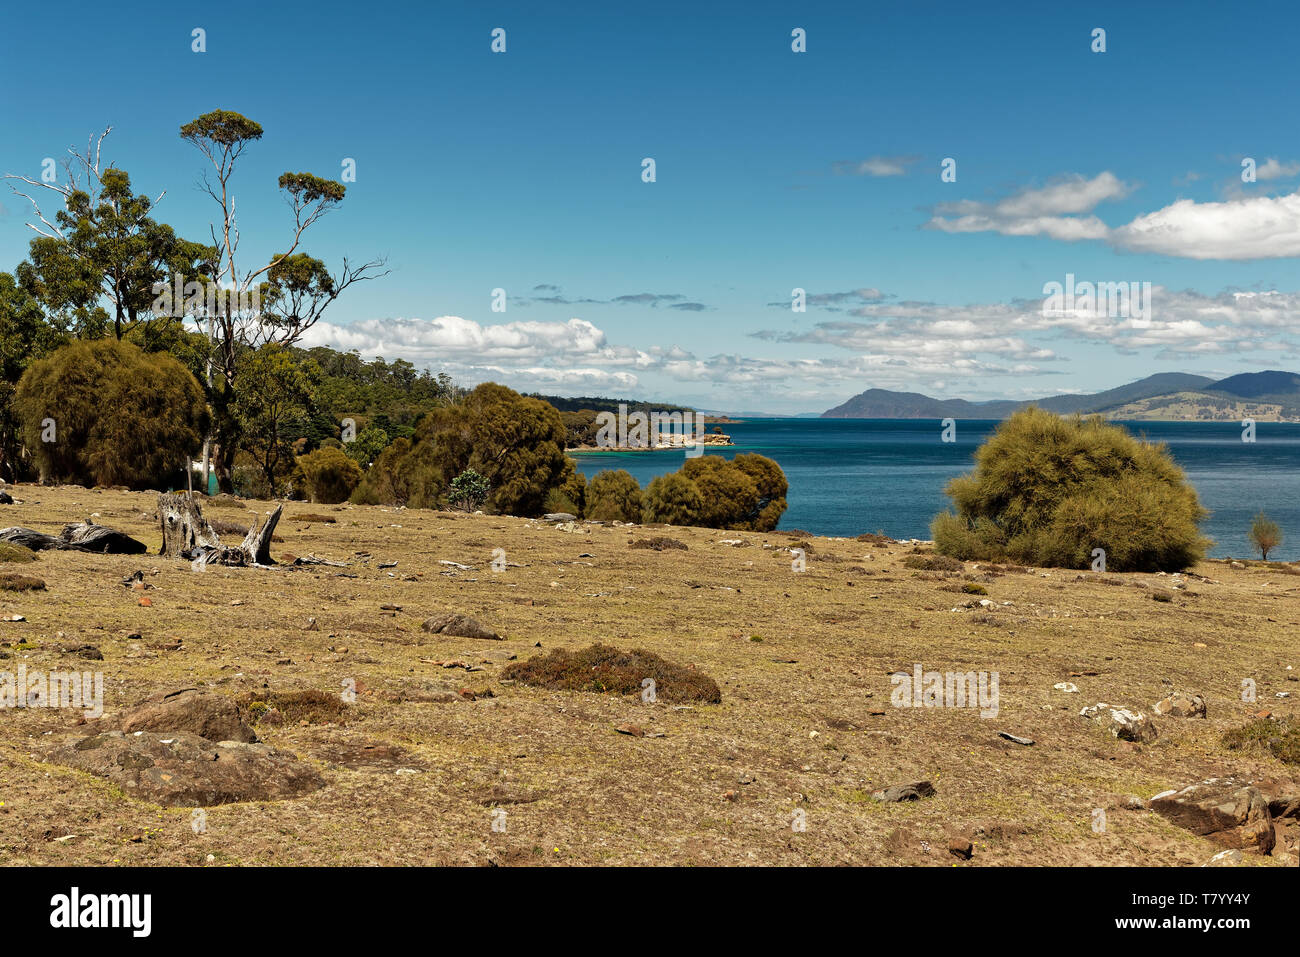 Paesaggio con la spiaggia di Maria Island in Tasmania, Prenotazione nazionale in Australia, bellissimo mare e paesaggi costieri. Foto Stock